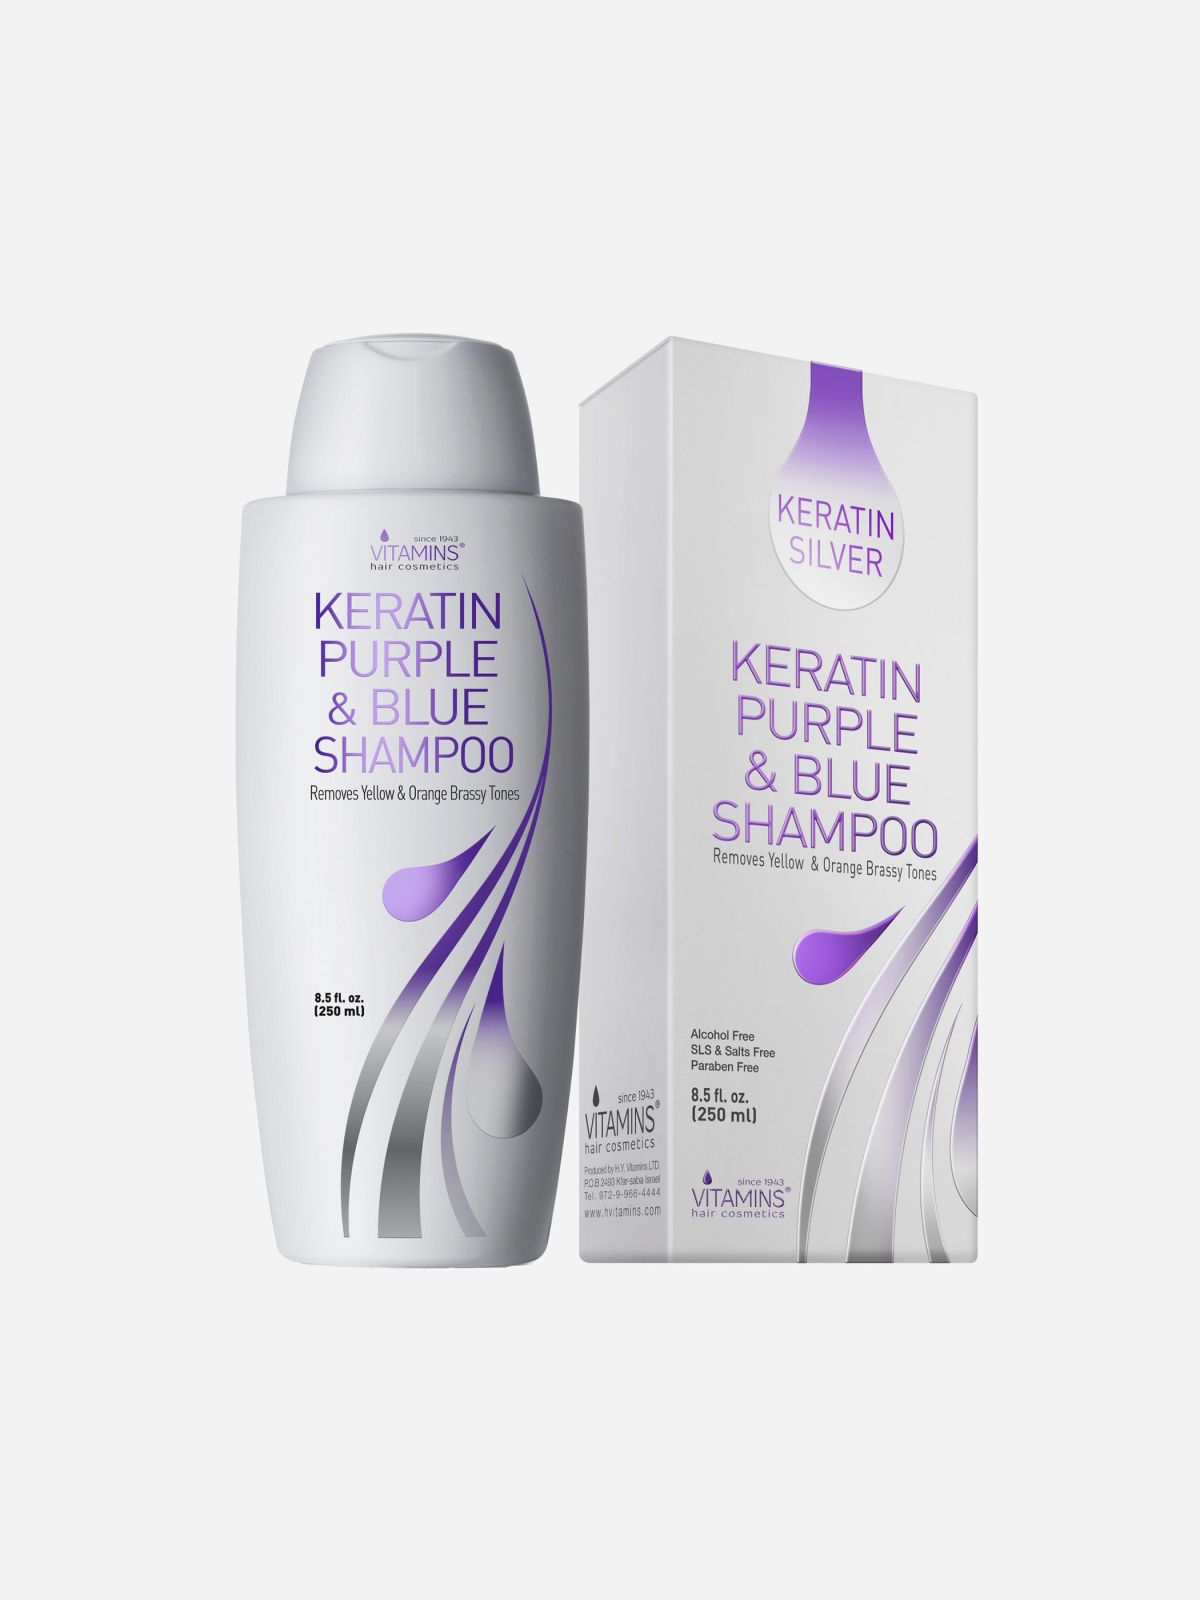  שמפו קרטין סילבר  Keratin Purple & Blue Shampoo של VITAMINS